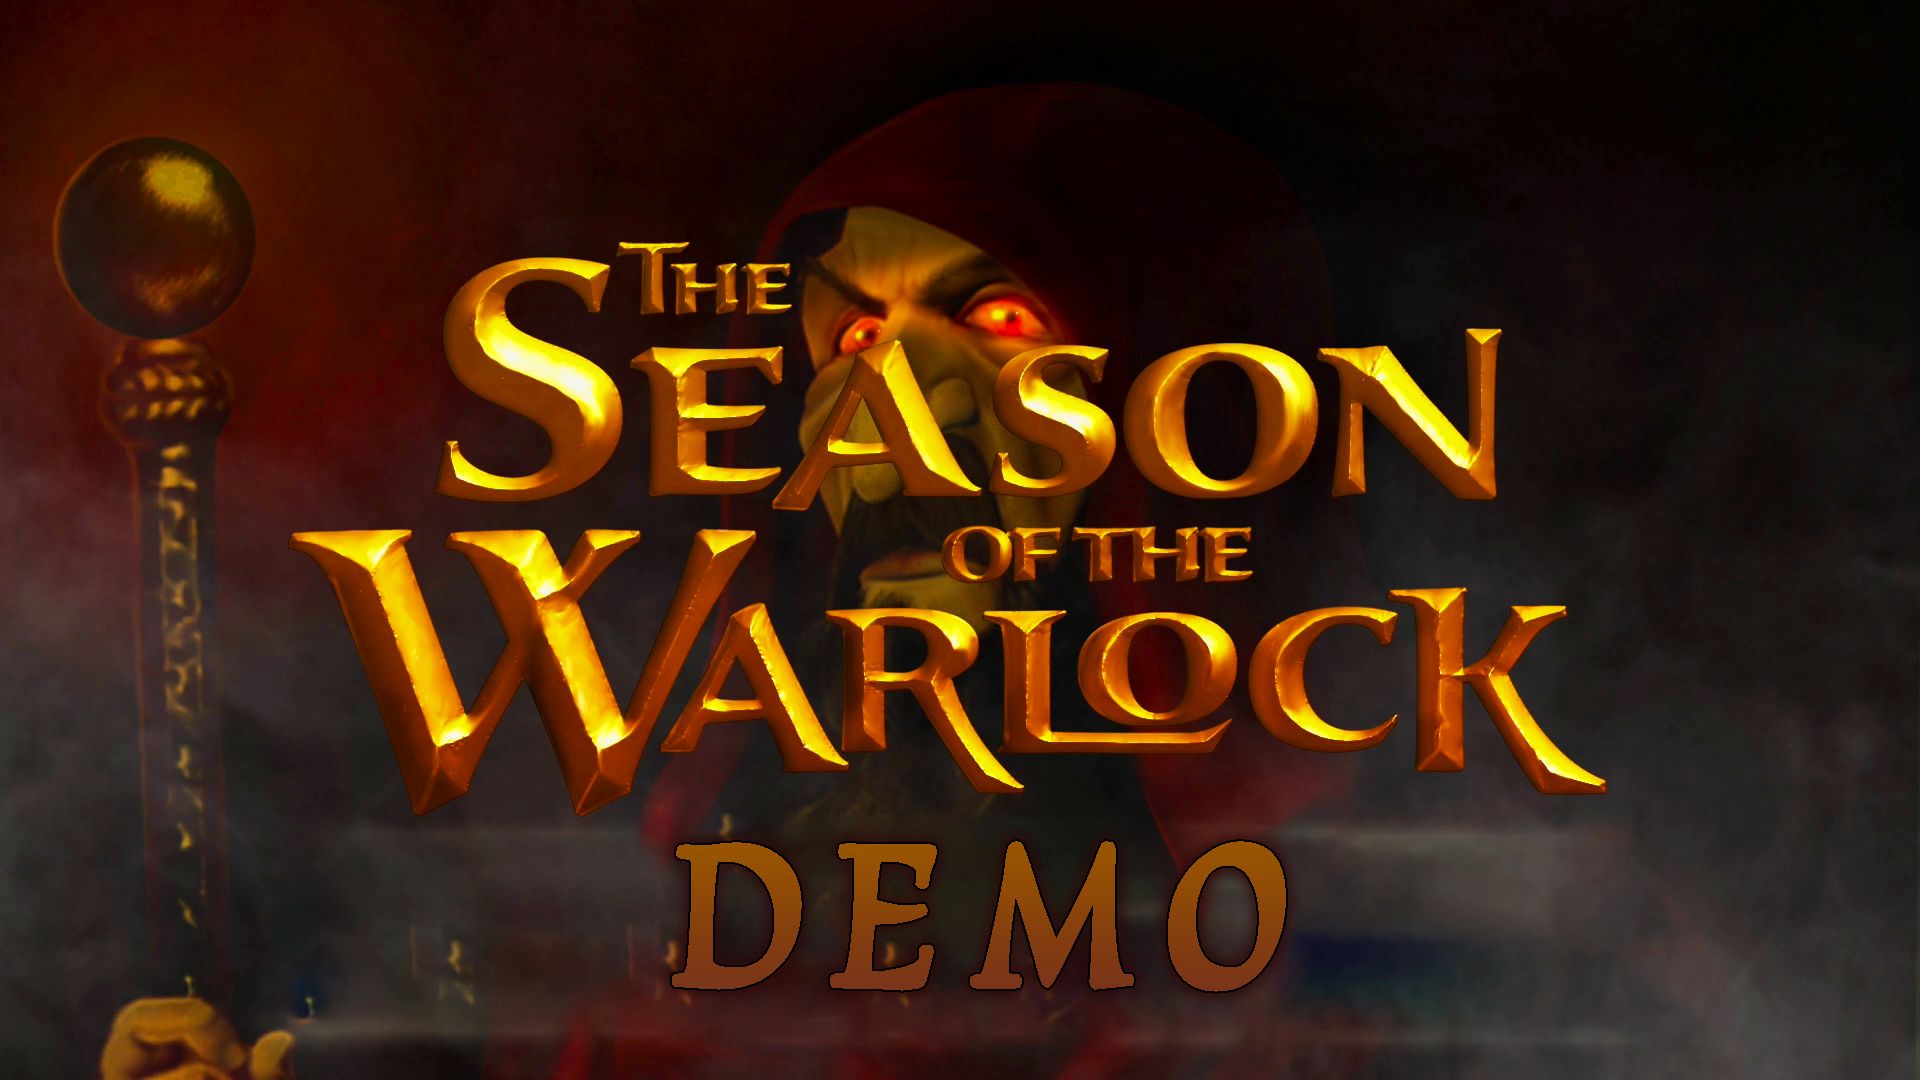 The Season of the Warlock Demo.